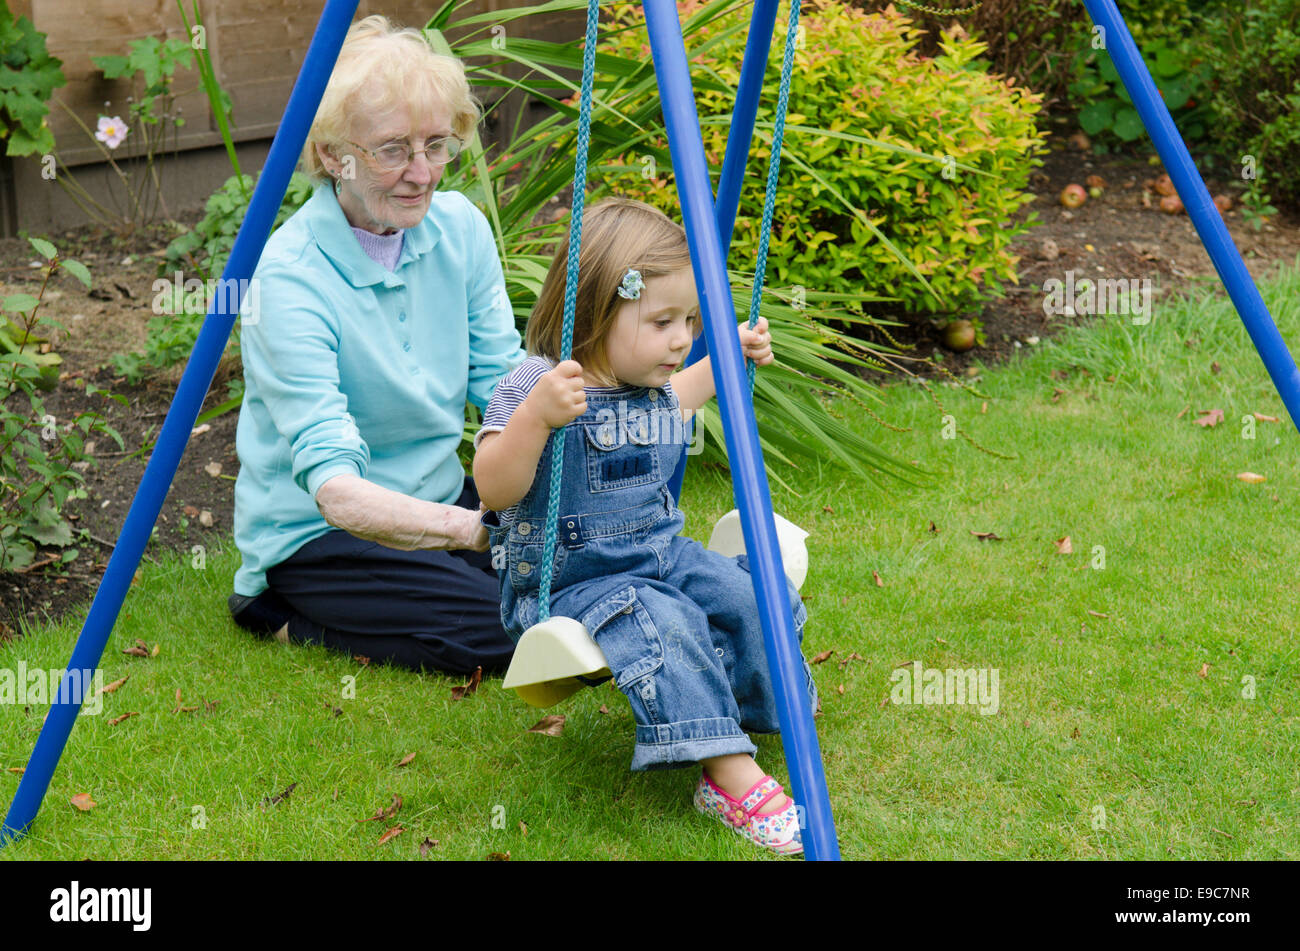 Bisnonna giocando con il suo pronipote in un giardino. Regno Unito Foto Stock